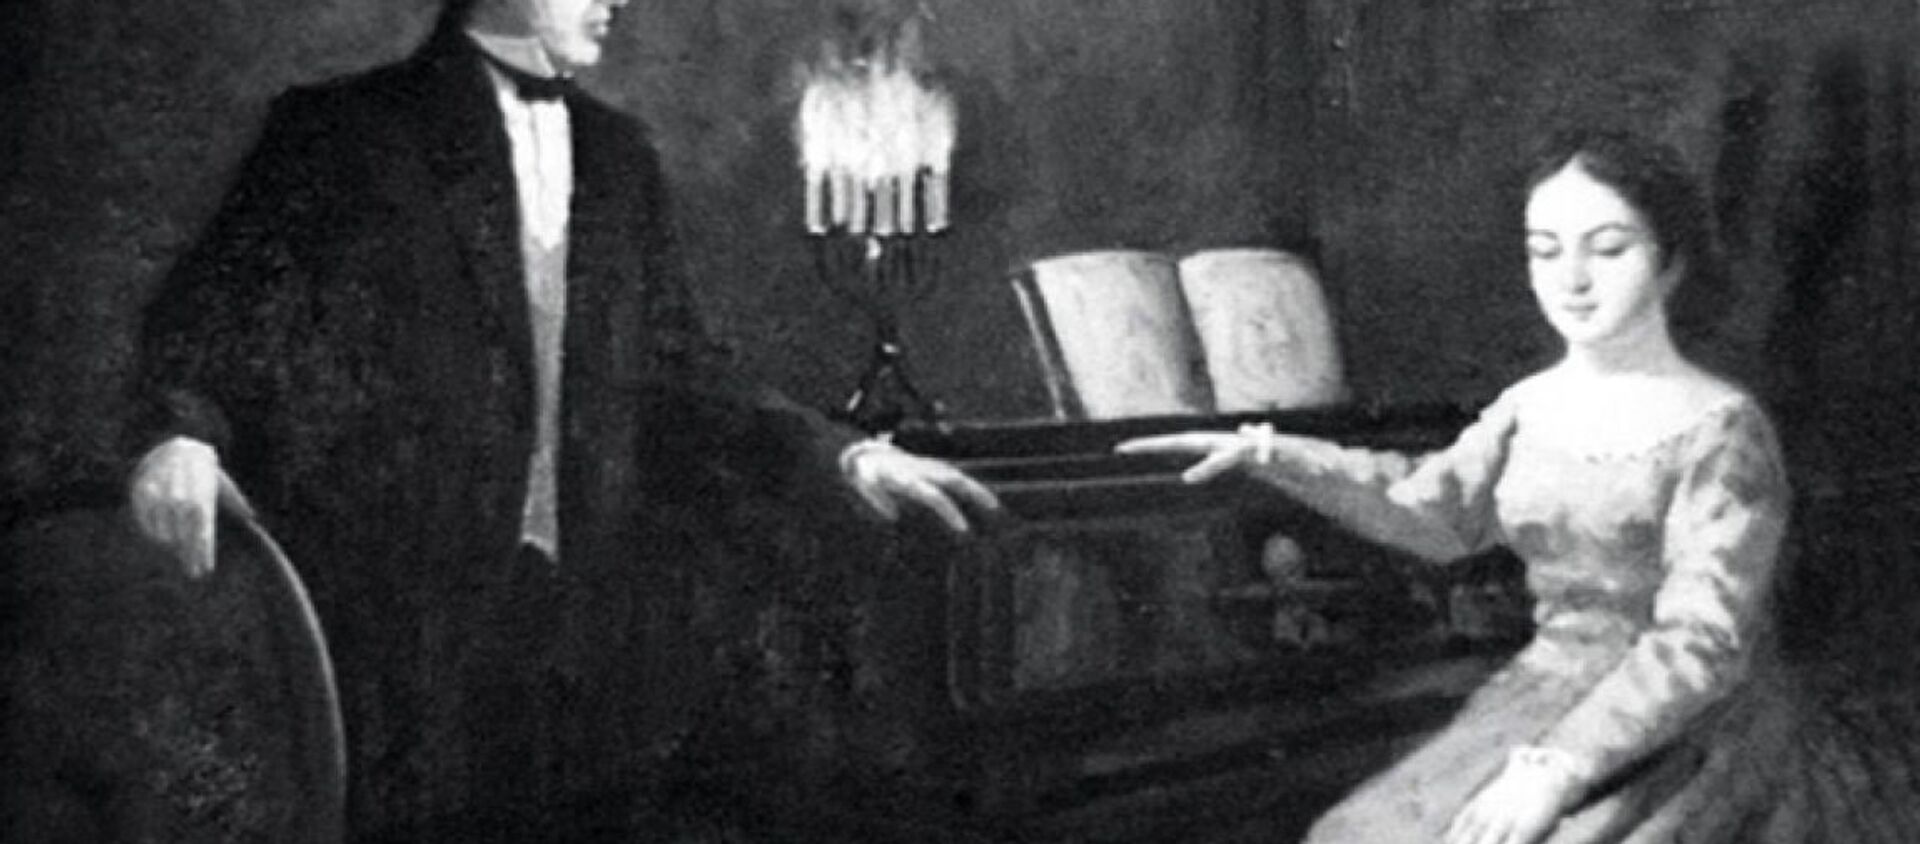 ალექსანდრე გრიბოედოვი და ნინო ჭავჭავაძე - Sputnik საქართველო, 1920, 04.11.2016